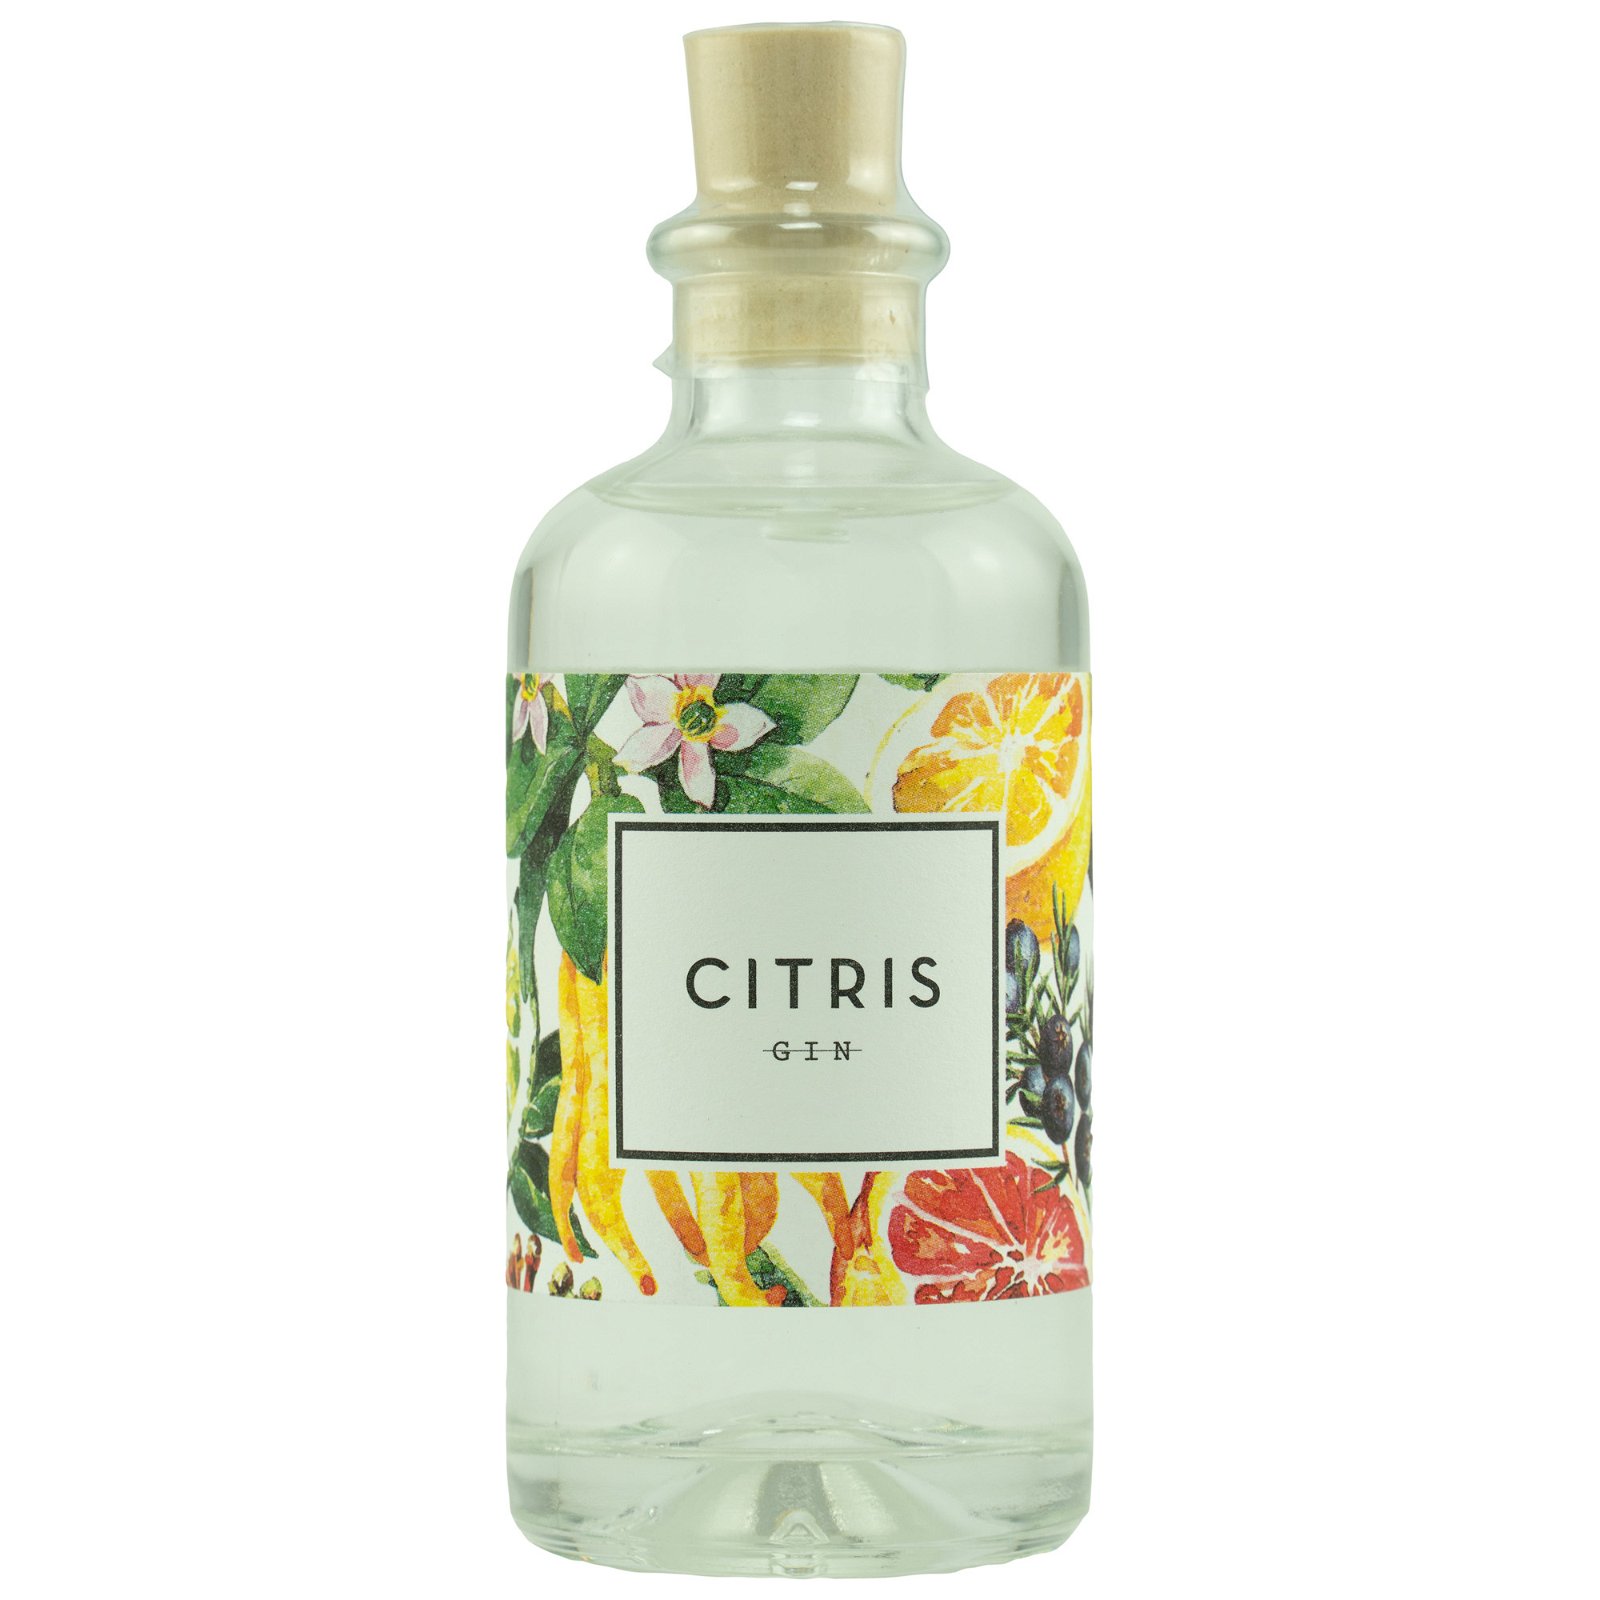 Citris Gin (100ml)